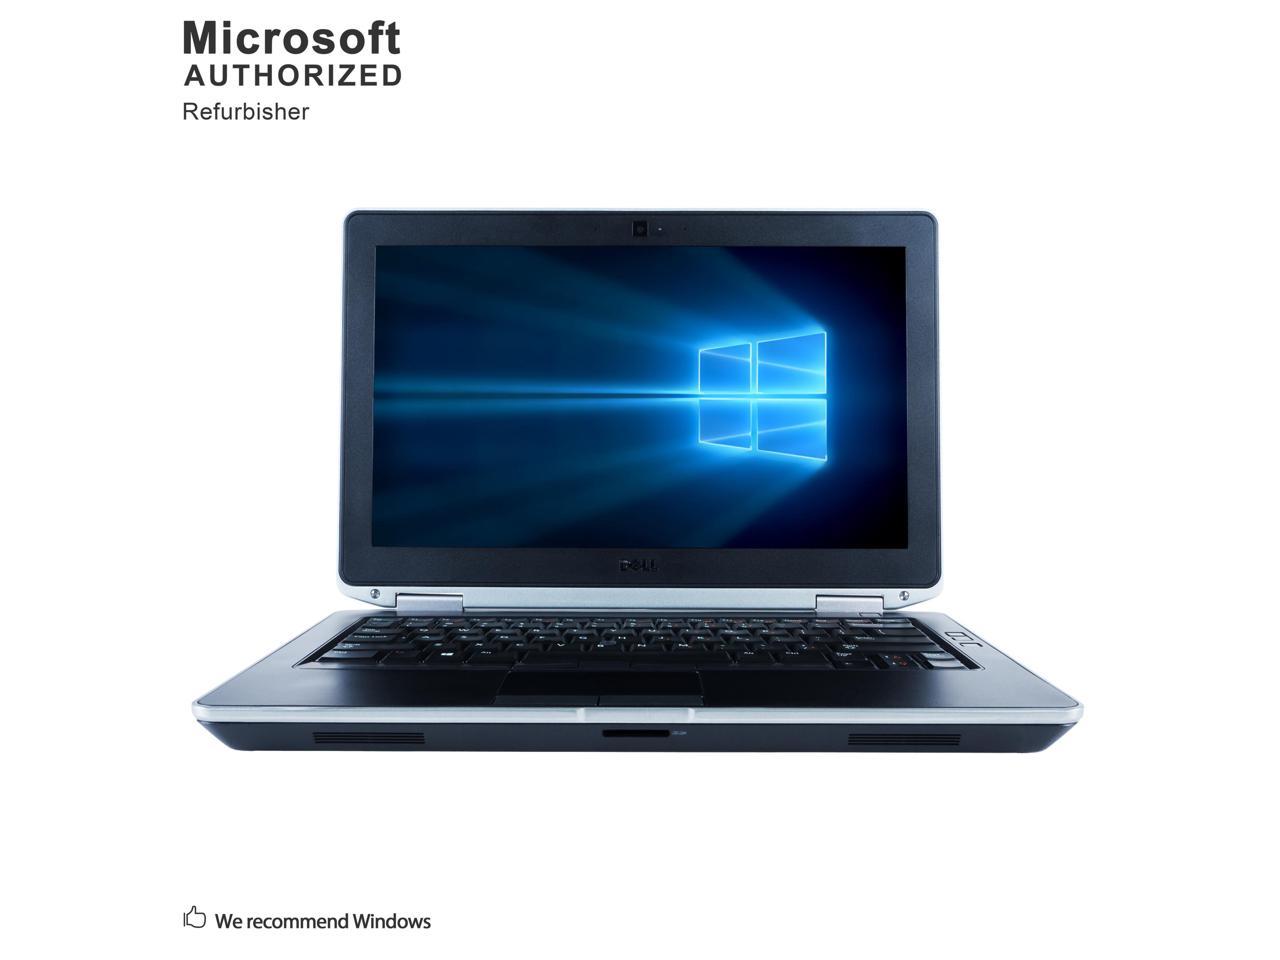 Dell Grade A Latitude E6330 13.3" Laptop, Intel Core I5-3320M up to 3.3G, 12G DDR3, 1T, DVD, USB 3.0, VGA, miniHDMI, Windows 10 Pro 64 bits Multi-language(EN/ES)